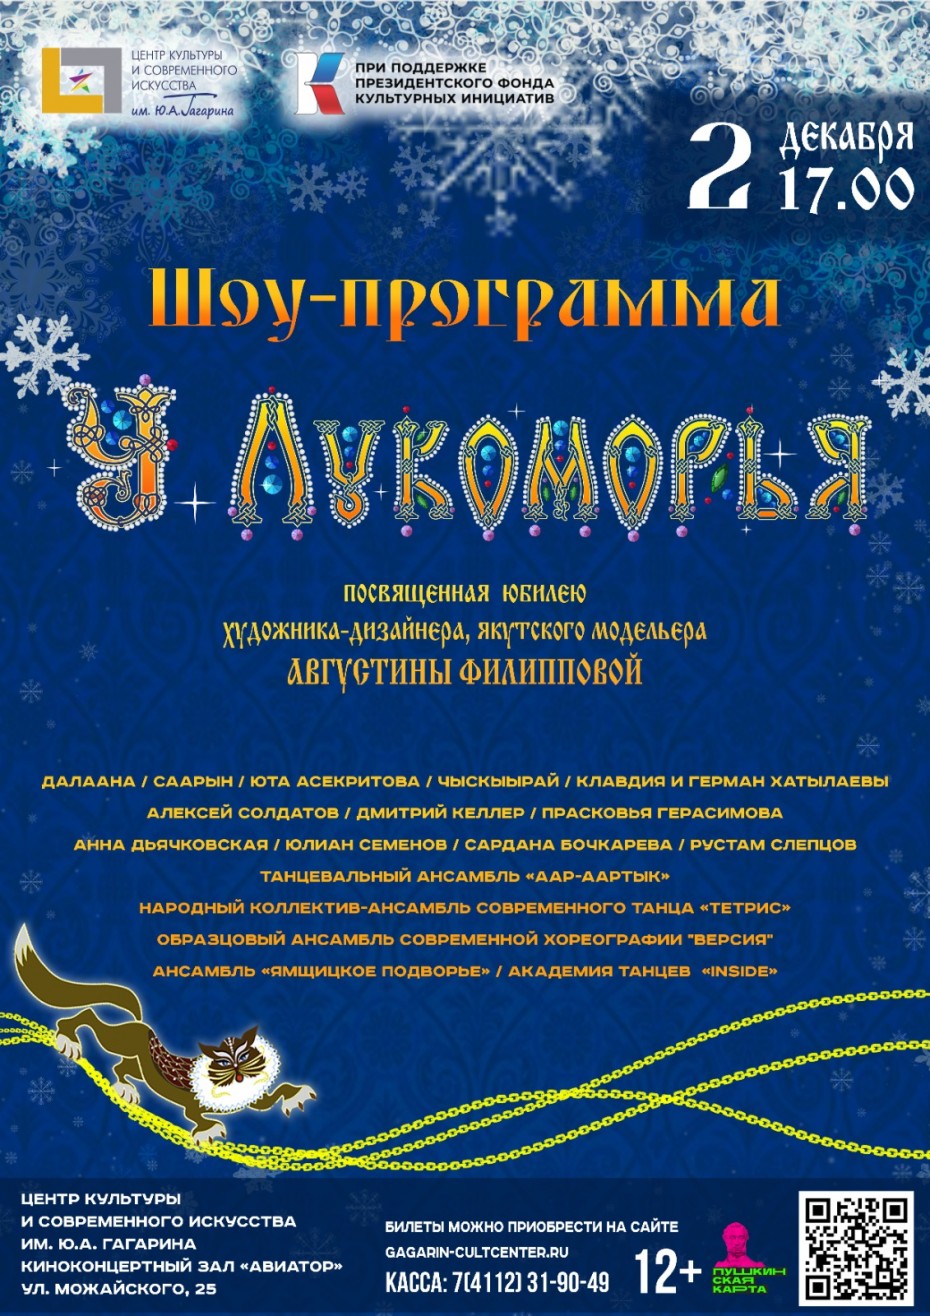 В Якутске пройдет шоу Августины Филипповой 